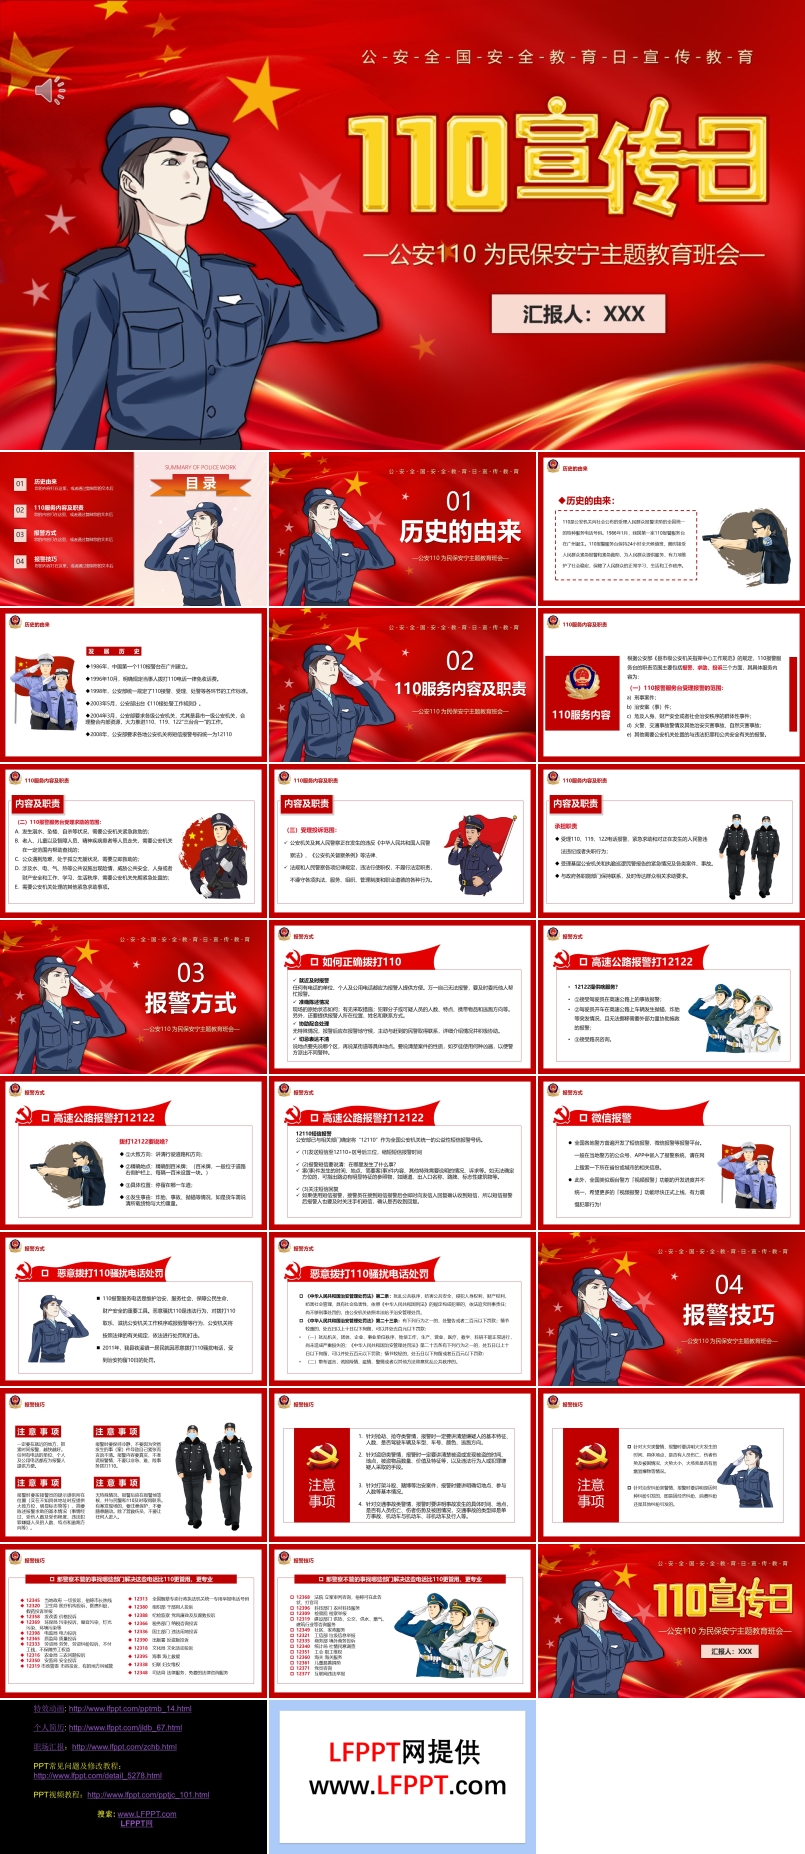 110宣传日PPT模板中国人民警察节110的由来及职责